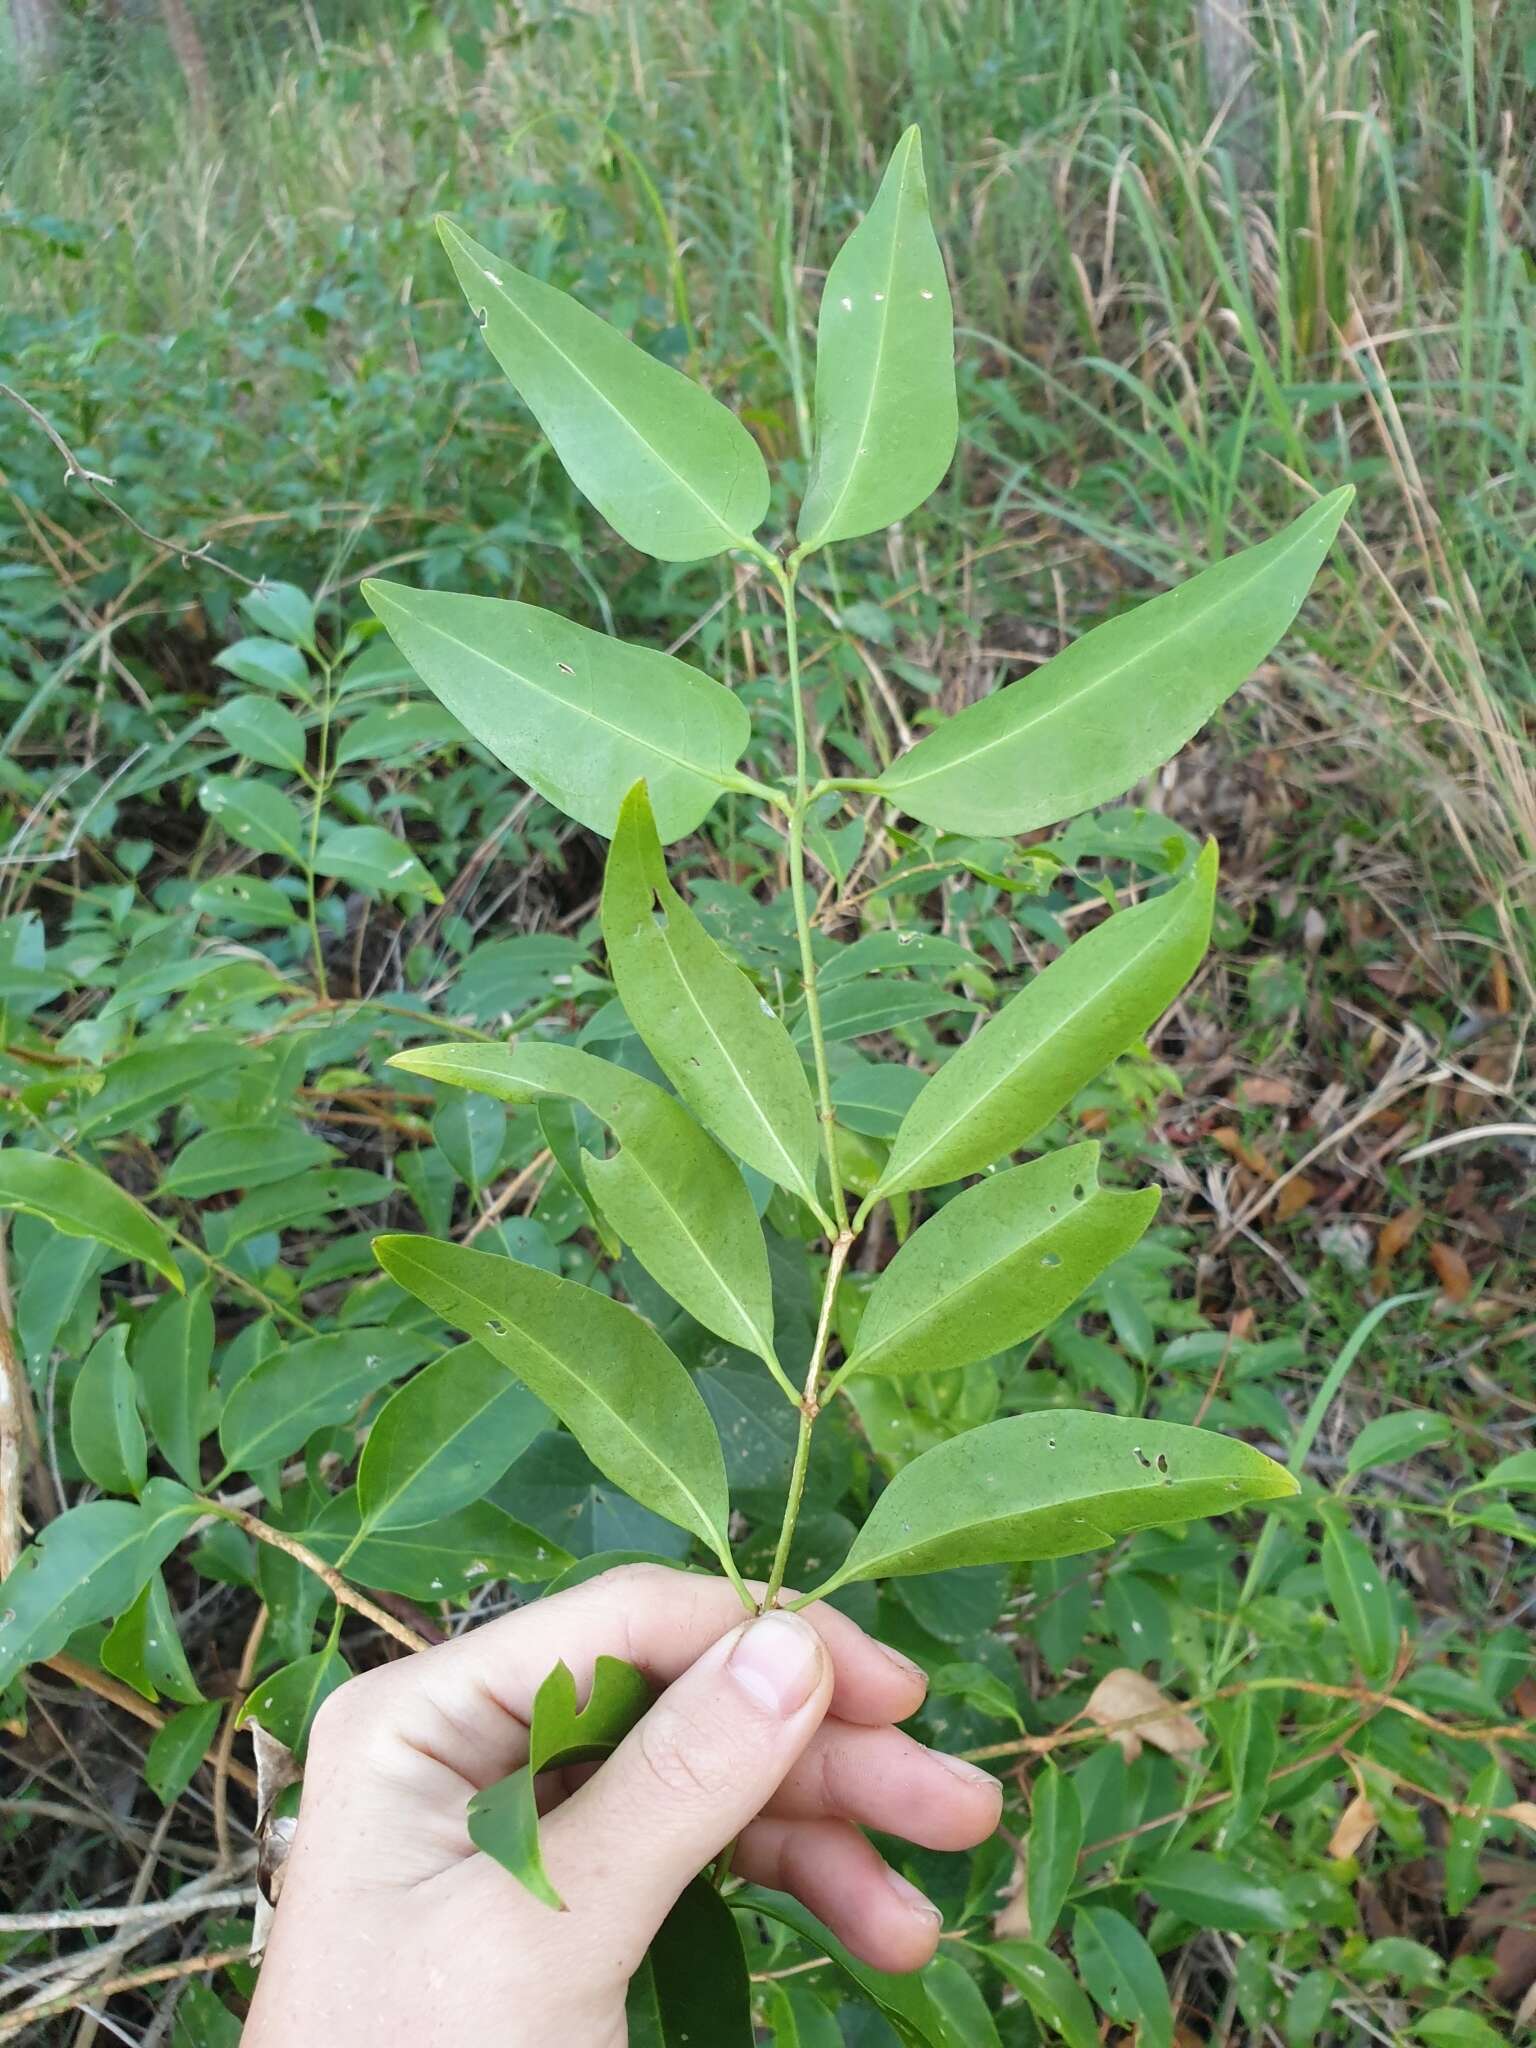 Image of Jasminum simplicifolium subsp. australiense P. S. Green